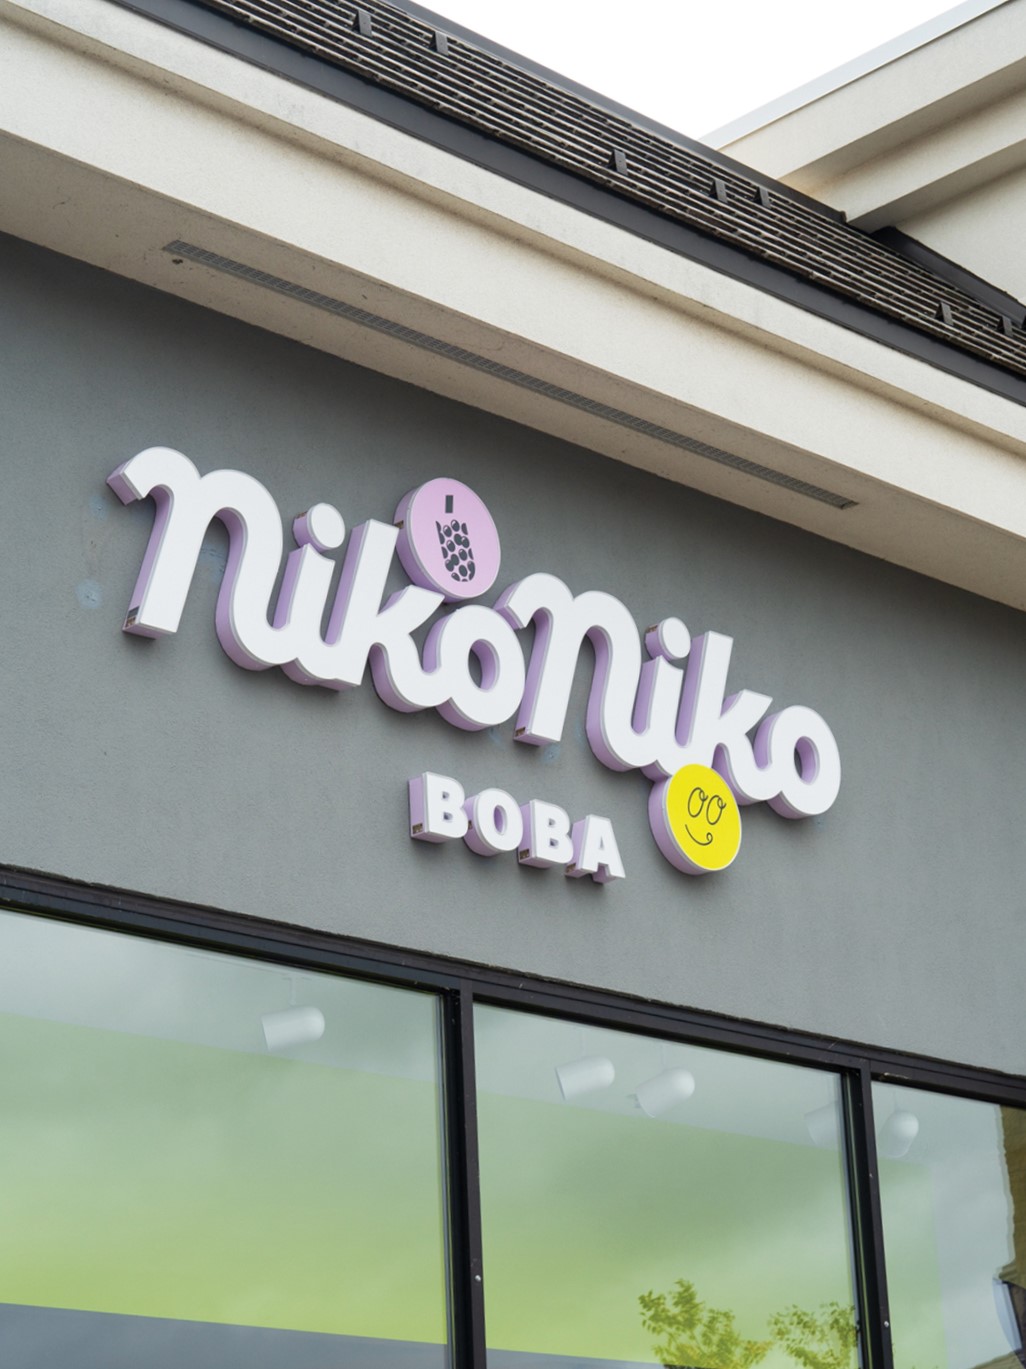 Niko Niko Boba is found at Woodbury’s shopping destination, Woodbury Lakes.